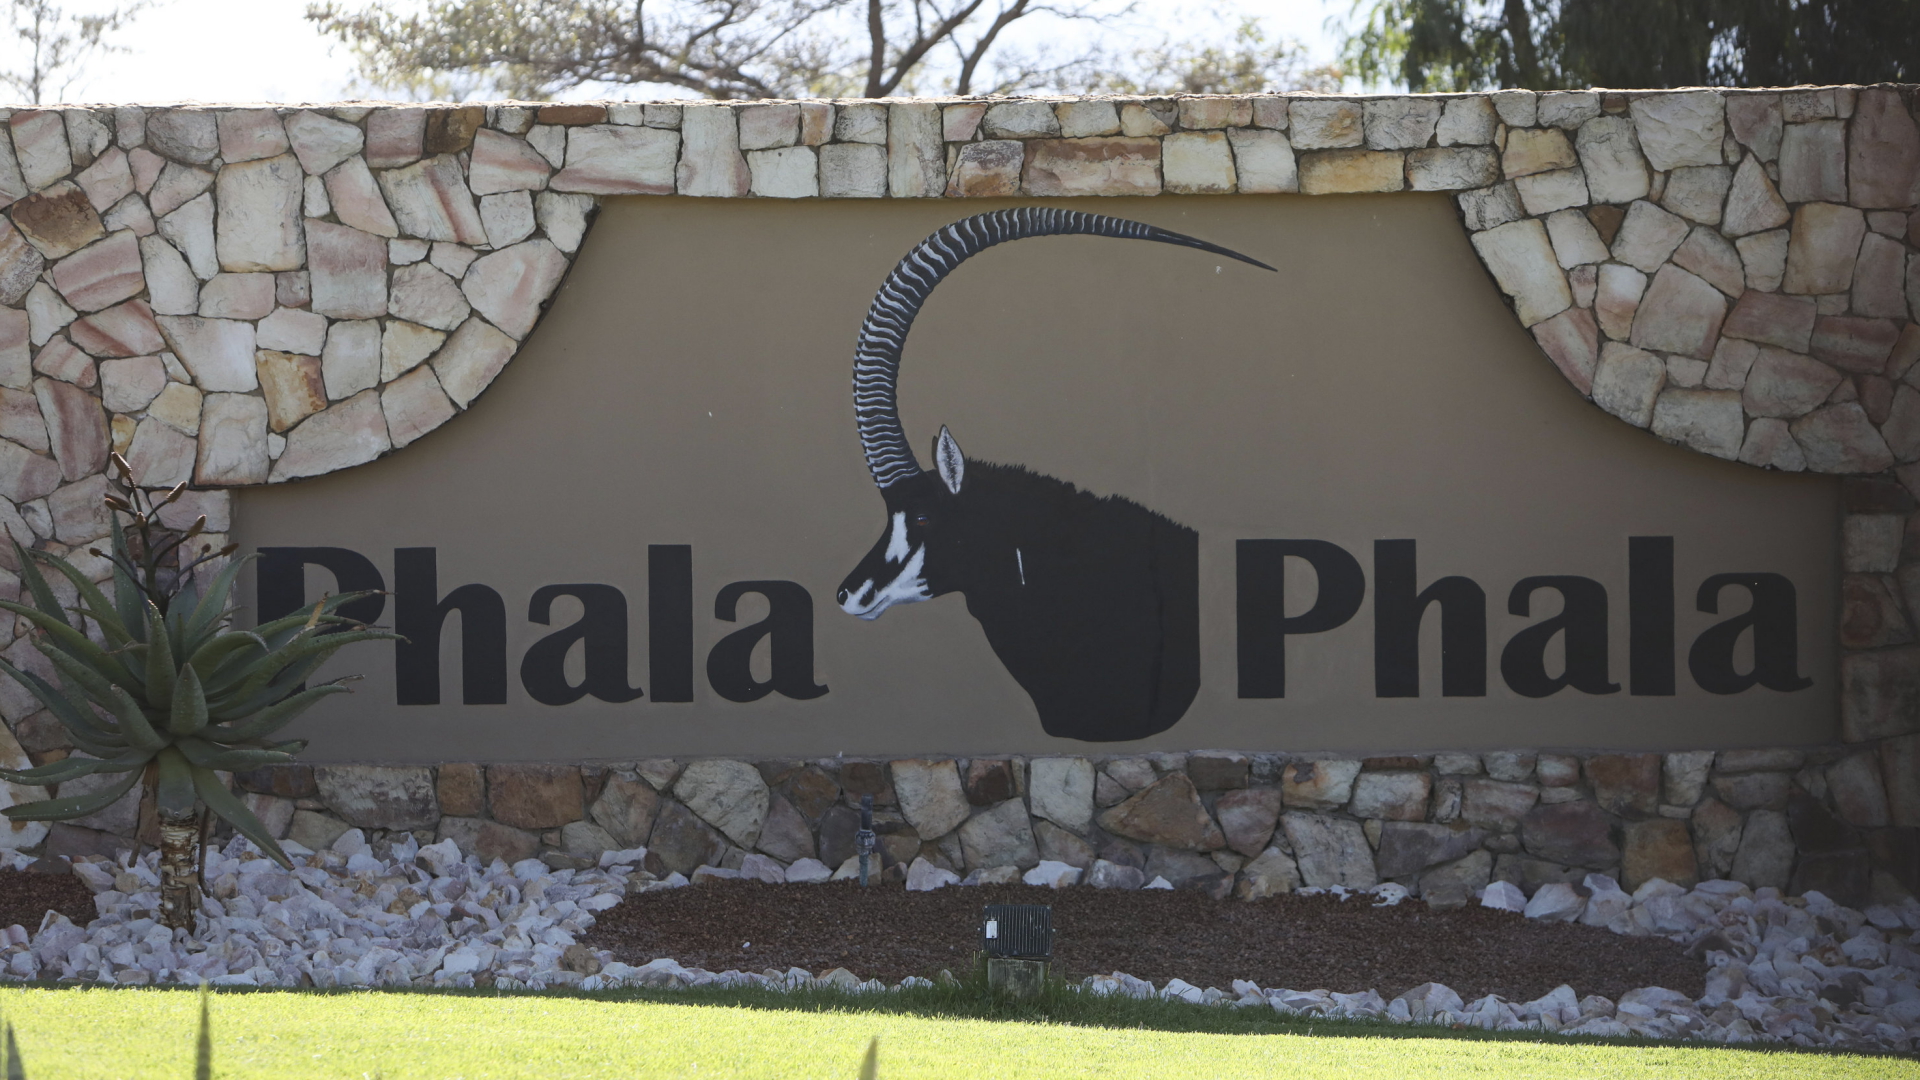 Eingang zur Farm "Phala Phala" von Cyril Ramaphosa | AP